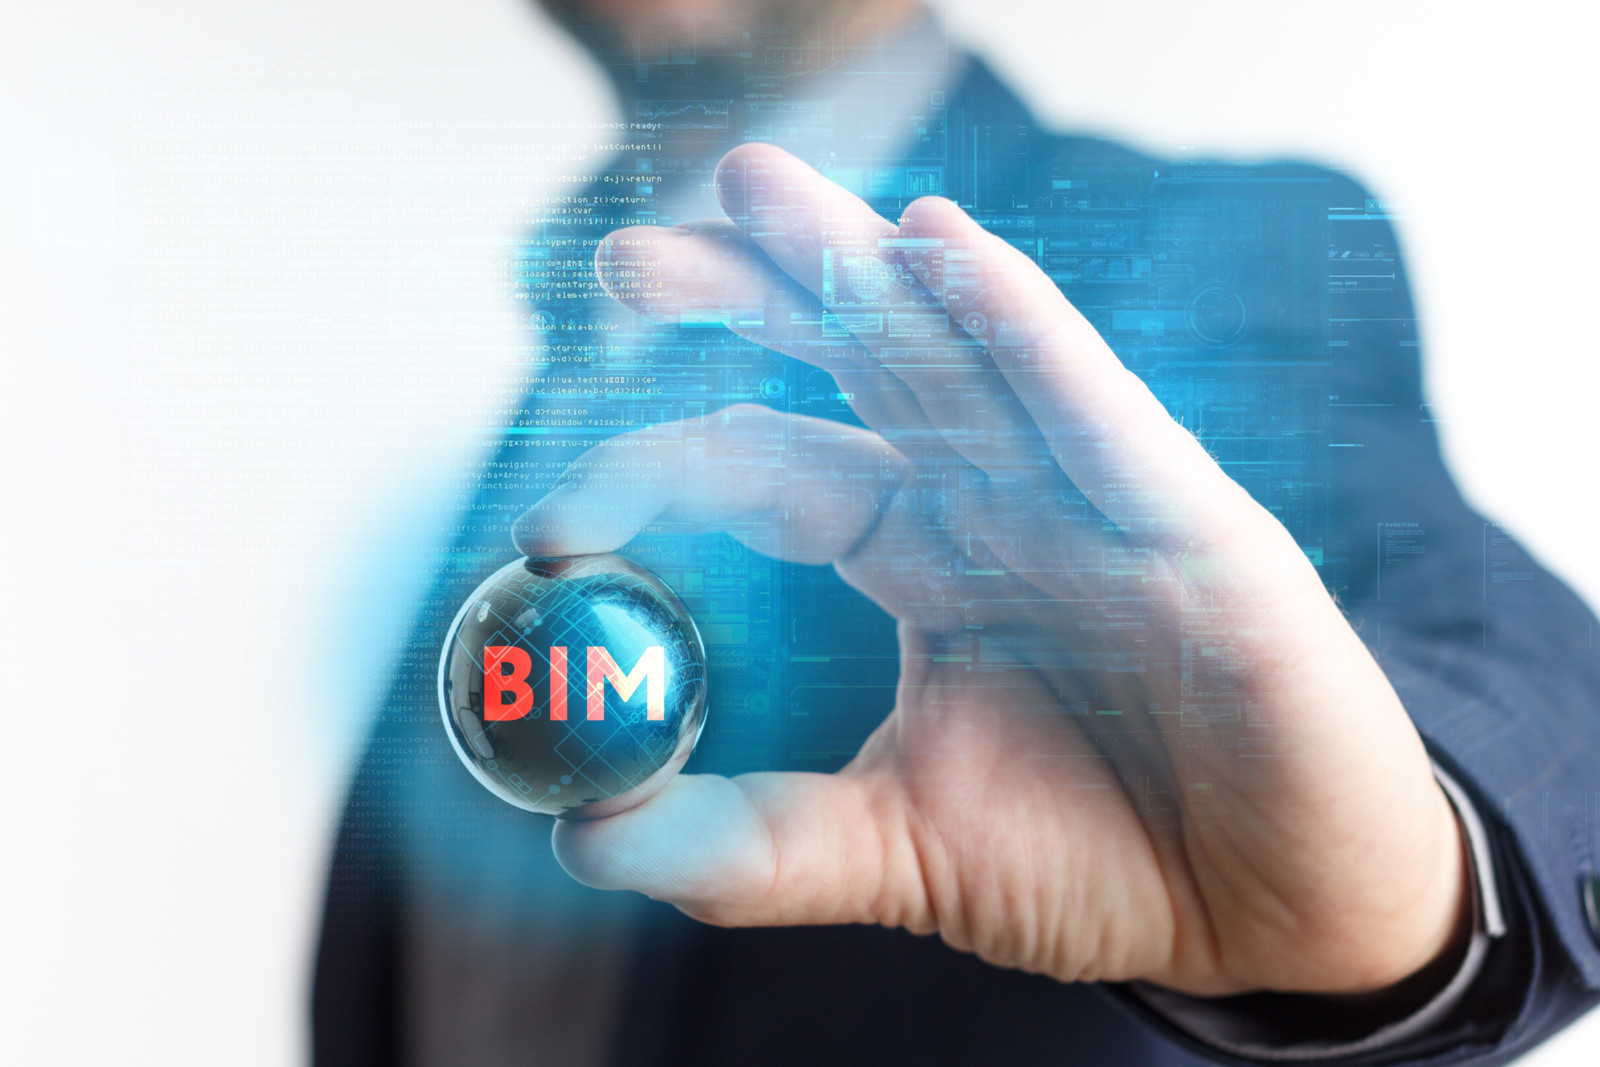 Neues BIM-Portal des Bundes: die neue Plattform soll dabei helfen, baurelevante Akteure bei der Implementierung der BIM-Methodik zu unterstützen.